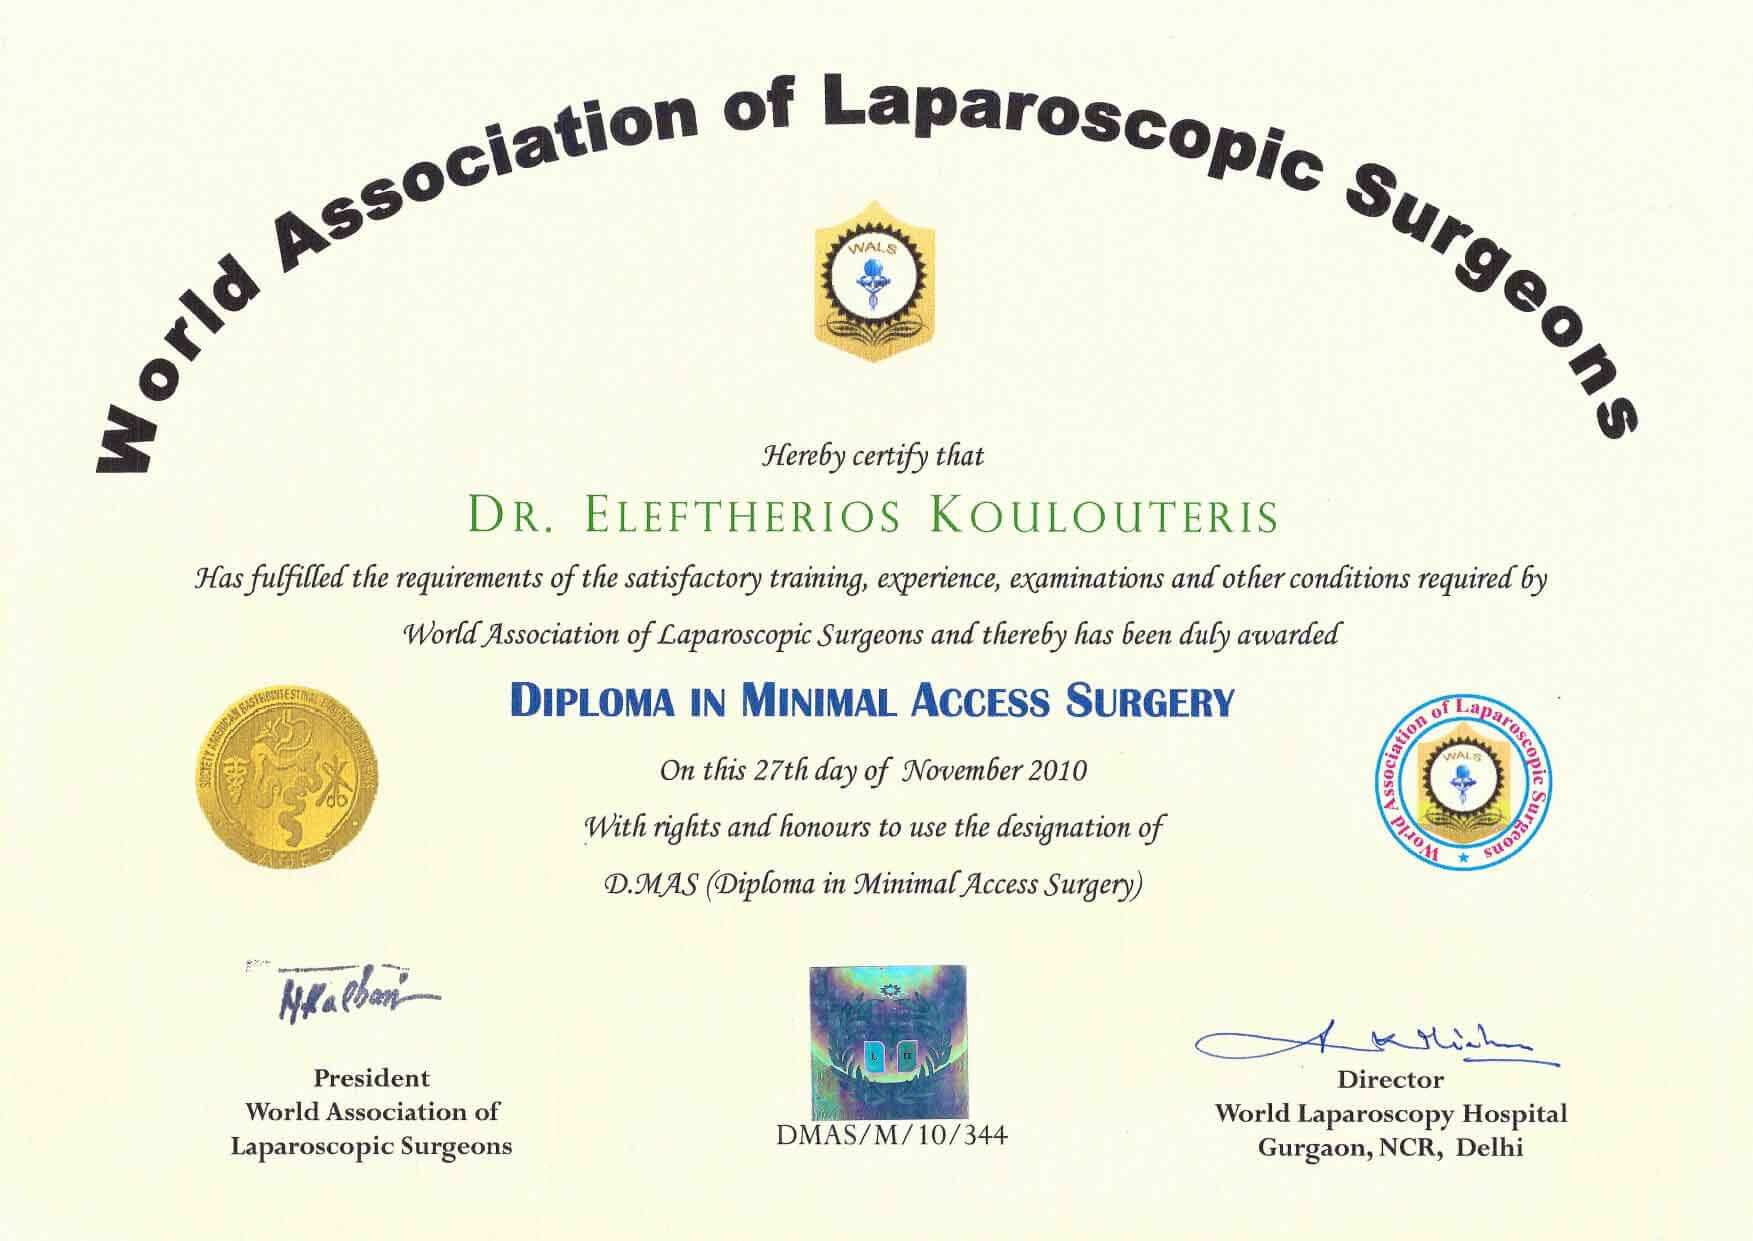 Δρ Κουλουτερης Παγκόσμια Ένωση Χειρουργών Λαπαροσκοπική Δίπλωμα D.MAS Ελάχιστη Επεμβατική Χειρουργική